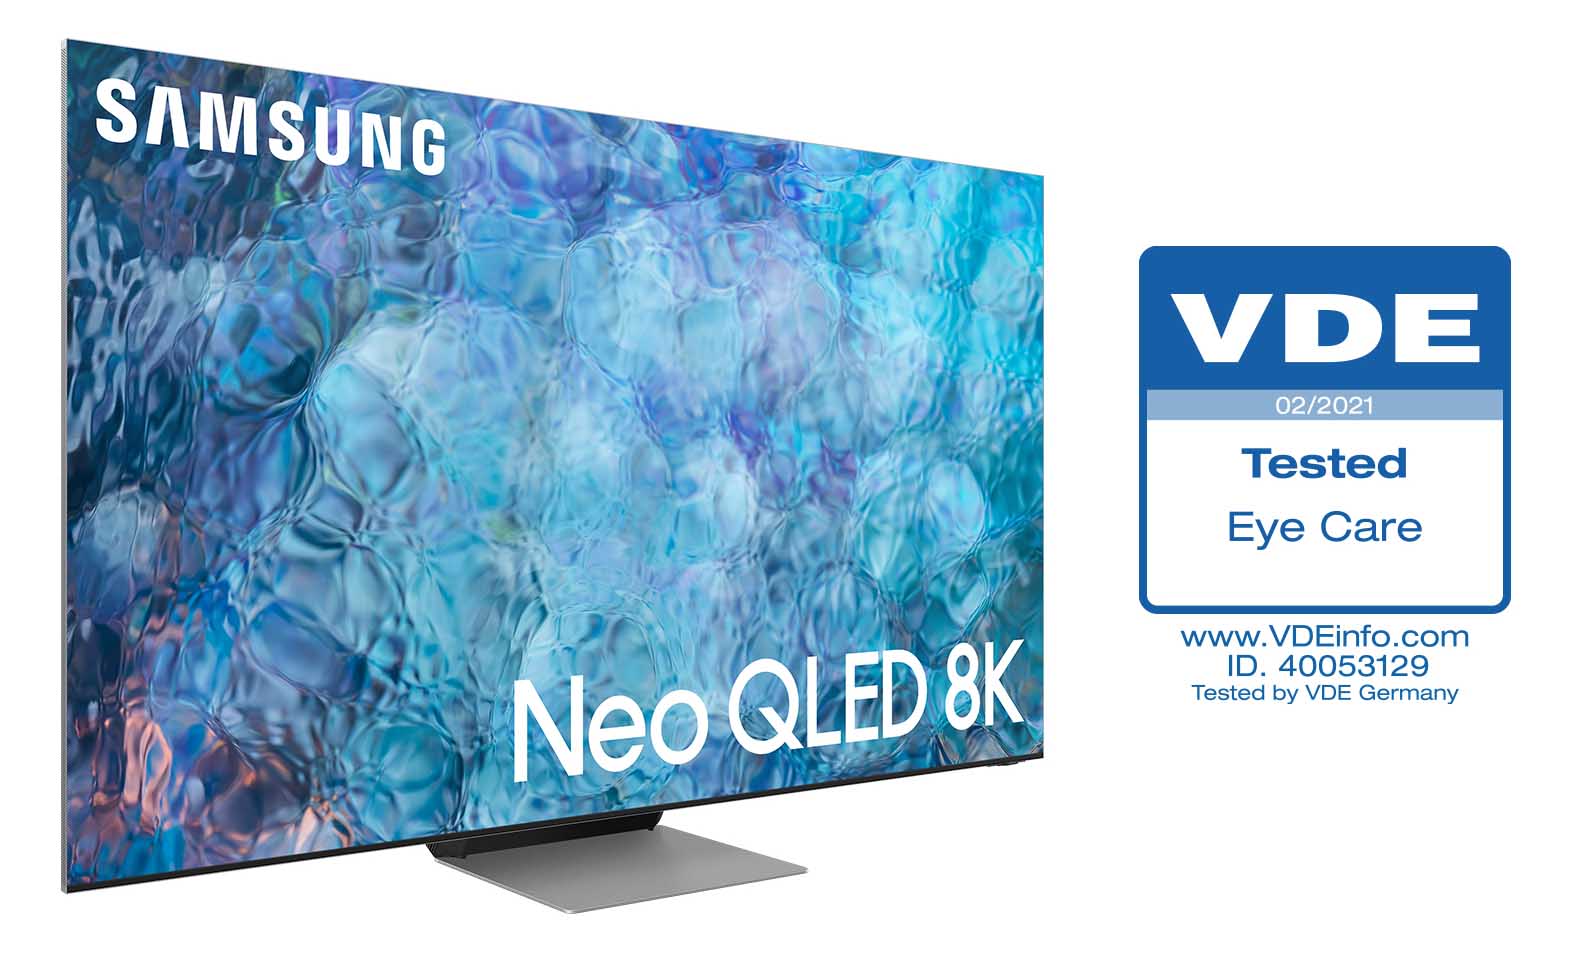 TV Neo QLED 2021 của Samsung nhận được Chứng nhận về khả năng ‘Bảo vệ mắt’ đầu tiên từ Hiệp hội Điện, Điện tử và Công nghệ Thông tin (VDE)